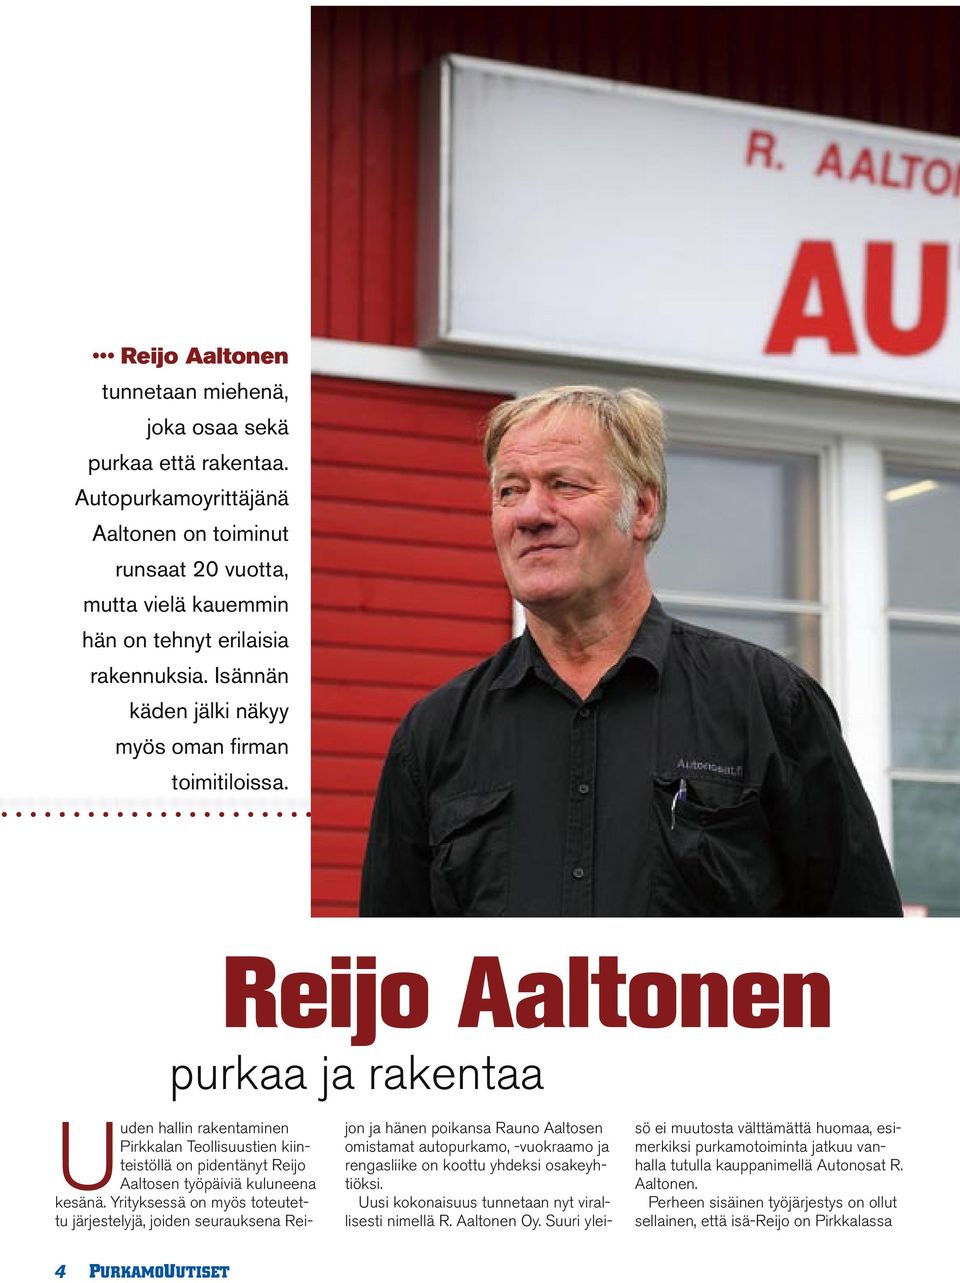 Reijo Aaltonen purkaa ja rakentaa Uuden hallin rakentaminen Pirkkalan Teollisuustien kiinteistöllä on pidentänyt Reijo Aaltosen työpäiviä kuluneena kesänä.